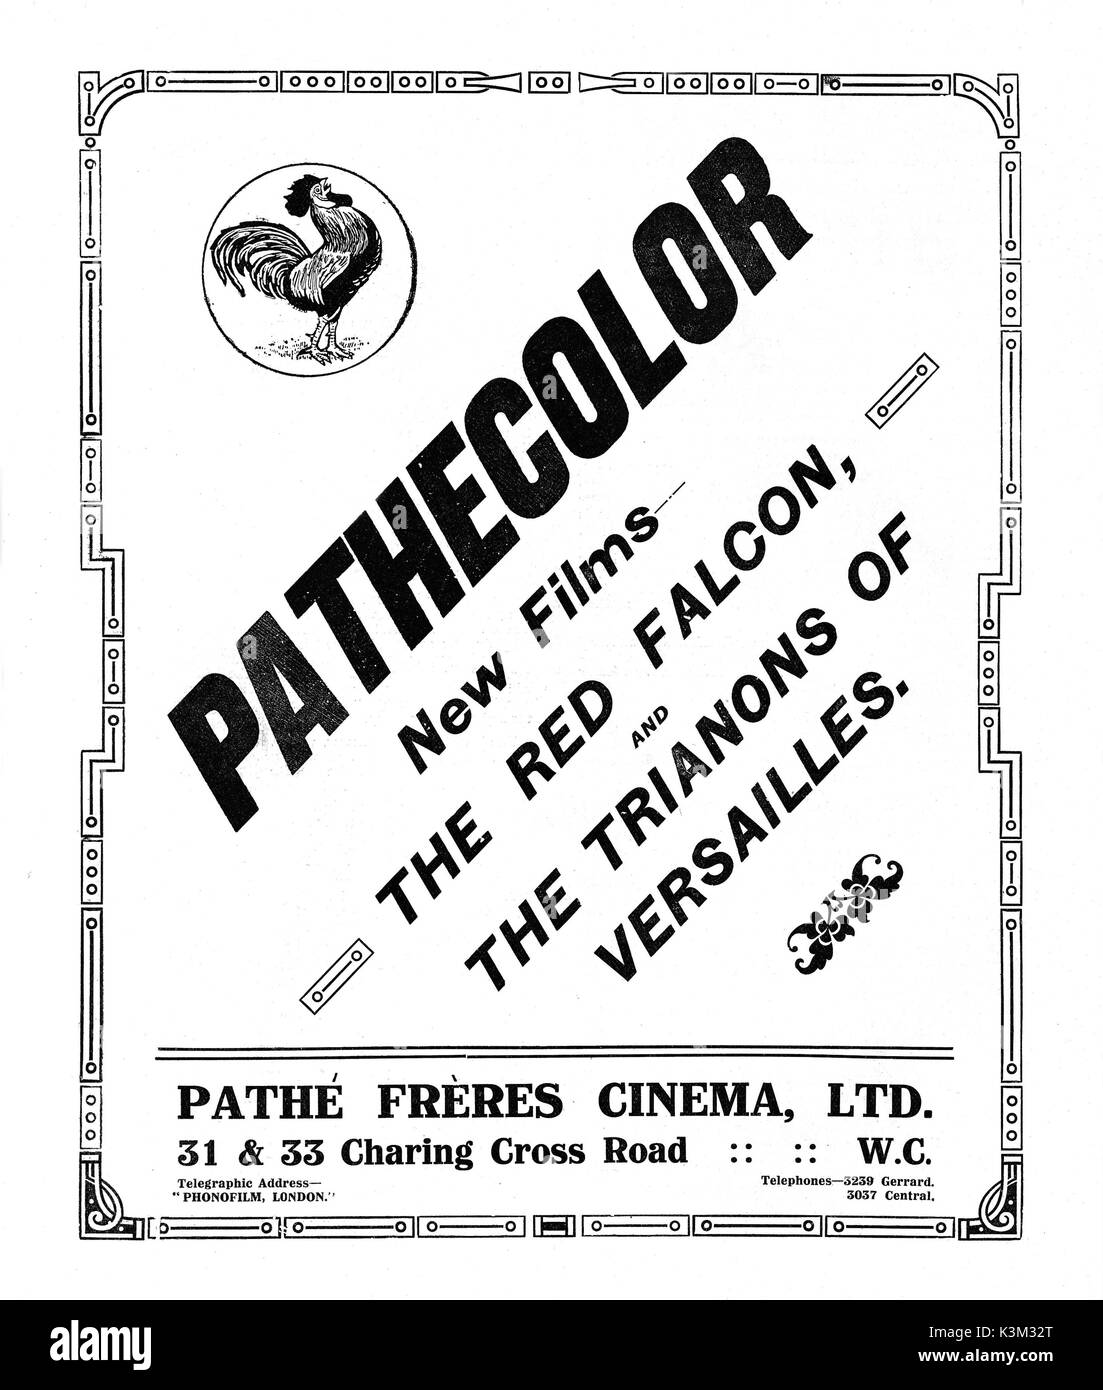 Ein 1912 Werbung für die PATHECOLOR System. Durch separate Schablonen für jeden Bereich der Farbe, farbige Farbstoffe sind in Schwarz und Weiss Folien aufgebracht. Ein sehr erfolgreiches System, mit schönen Ergebnisse, überlebte es mindestens bis zum Ende der 1920er Jahre ein Inserat 1912 für die PATHECOLOR System. Durch separate Schablonen für jeden Bereich der Farbe, farbige Farbstoffe sind in Schwarz und Weiss Folien aufgebracht. Ein sehr erfolgreiches System, mit schönen Ergebnisse, überlebte es mindestens bis zum Ende der 1920er Jahre Stockfoto